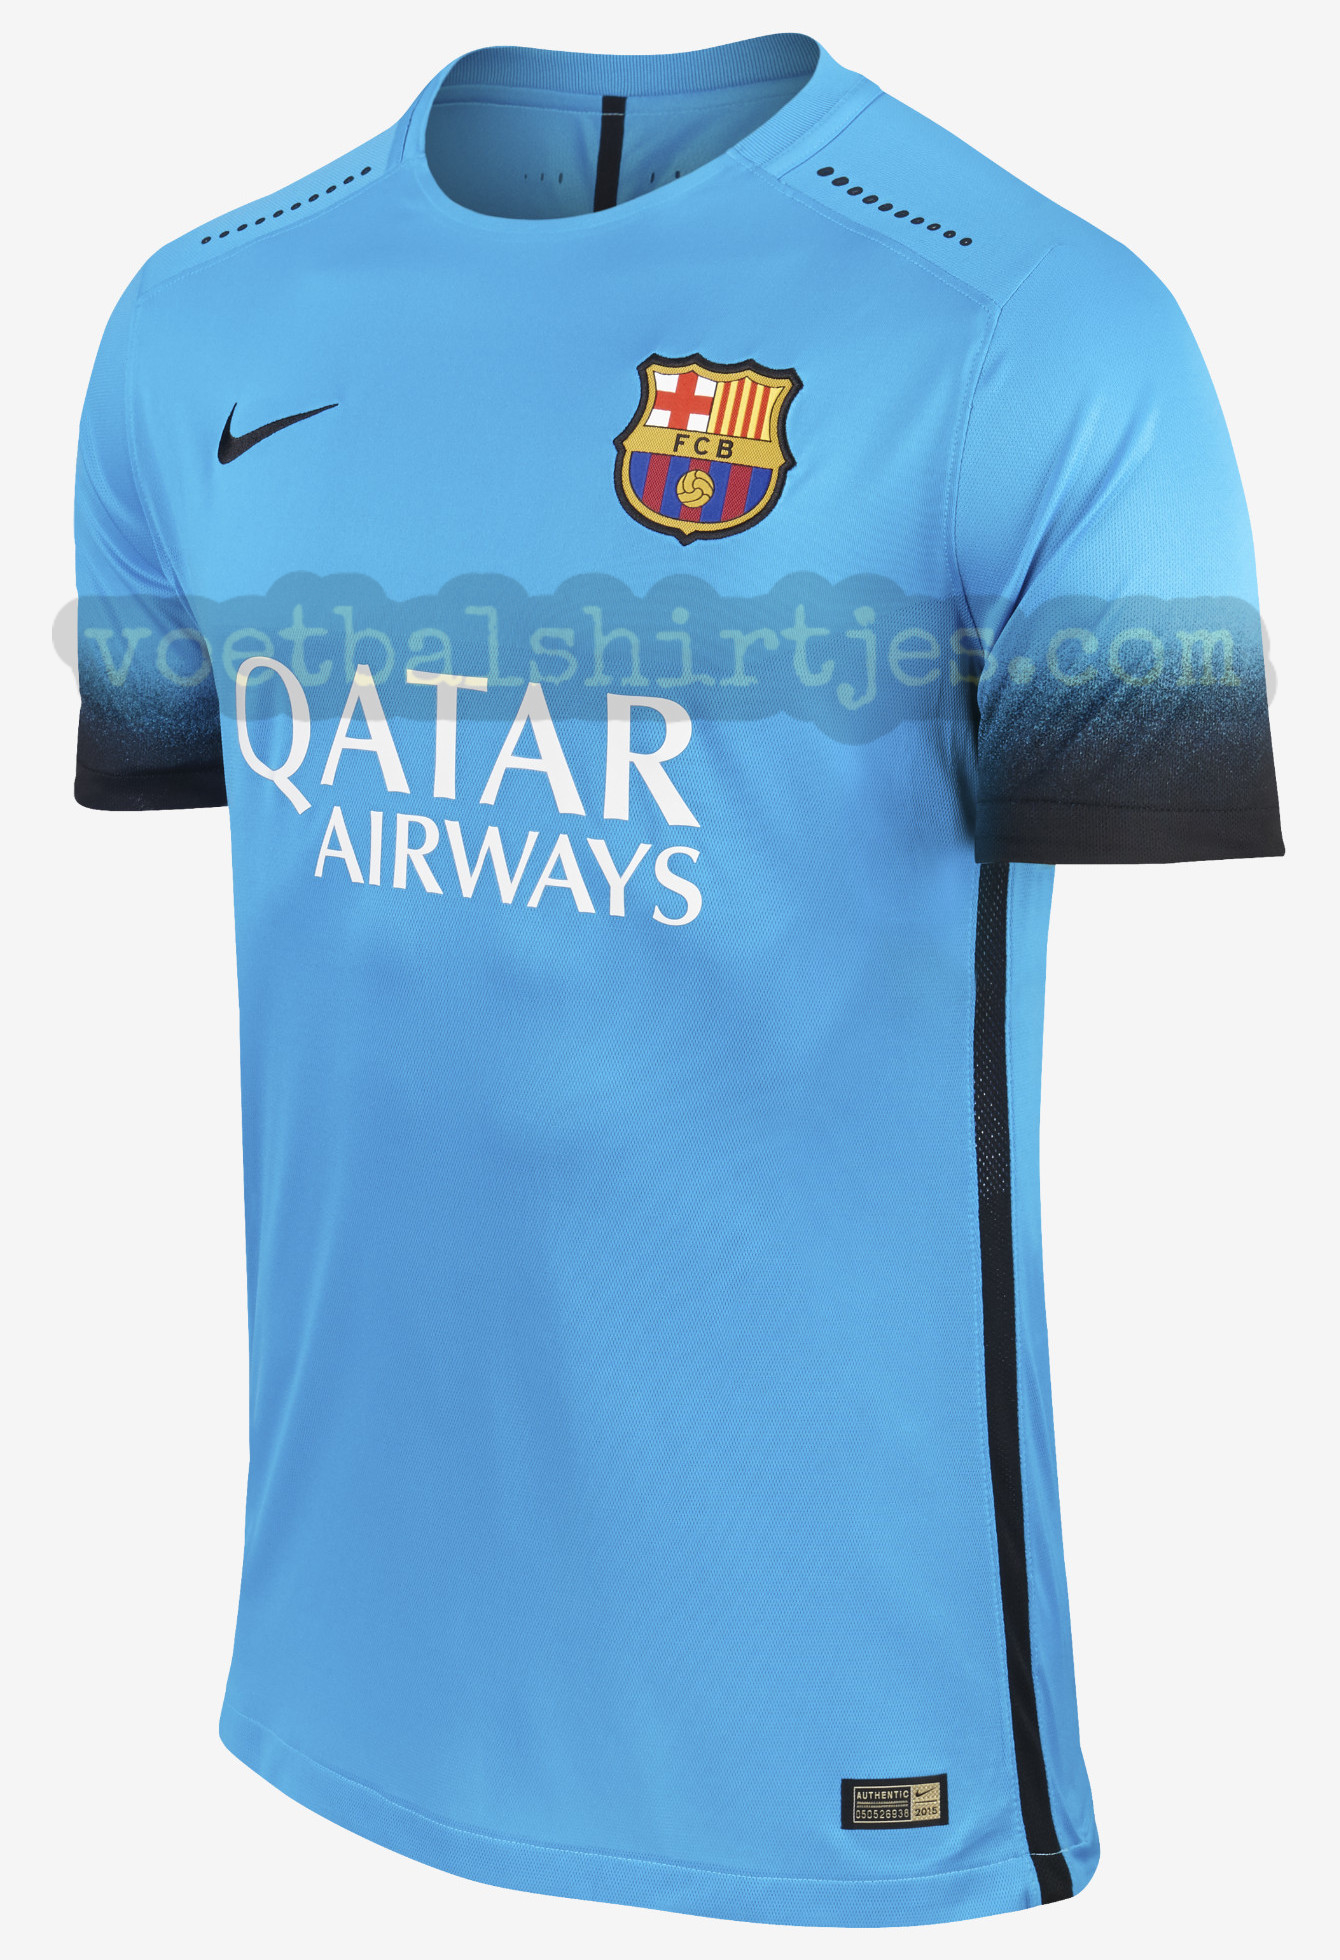 Barcelona 3e shirt 2015/2016 - Barca 3rd kit